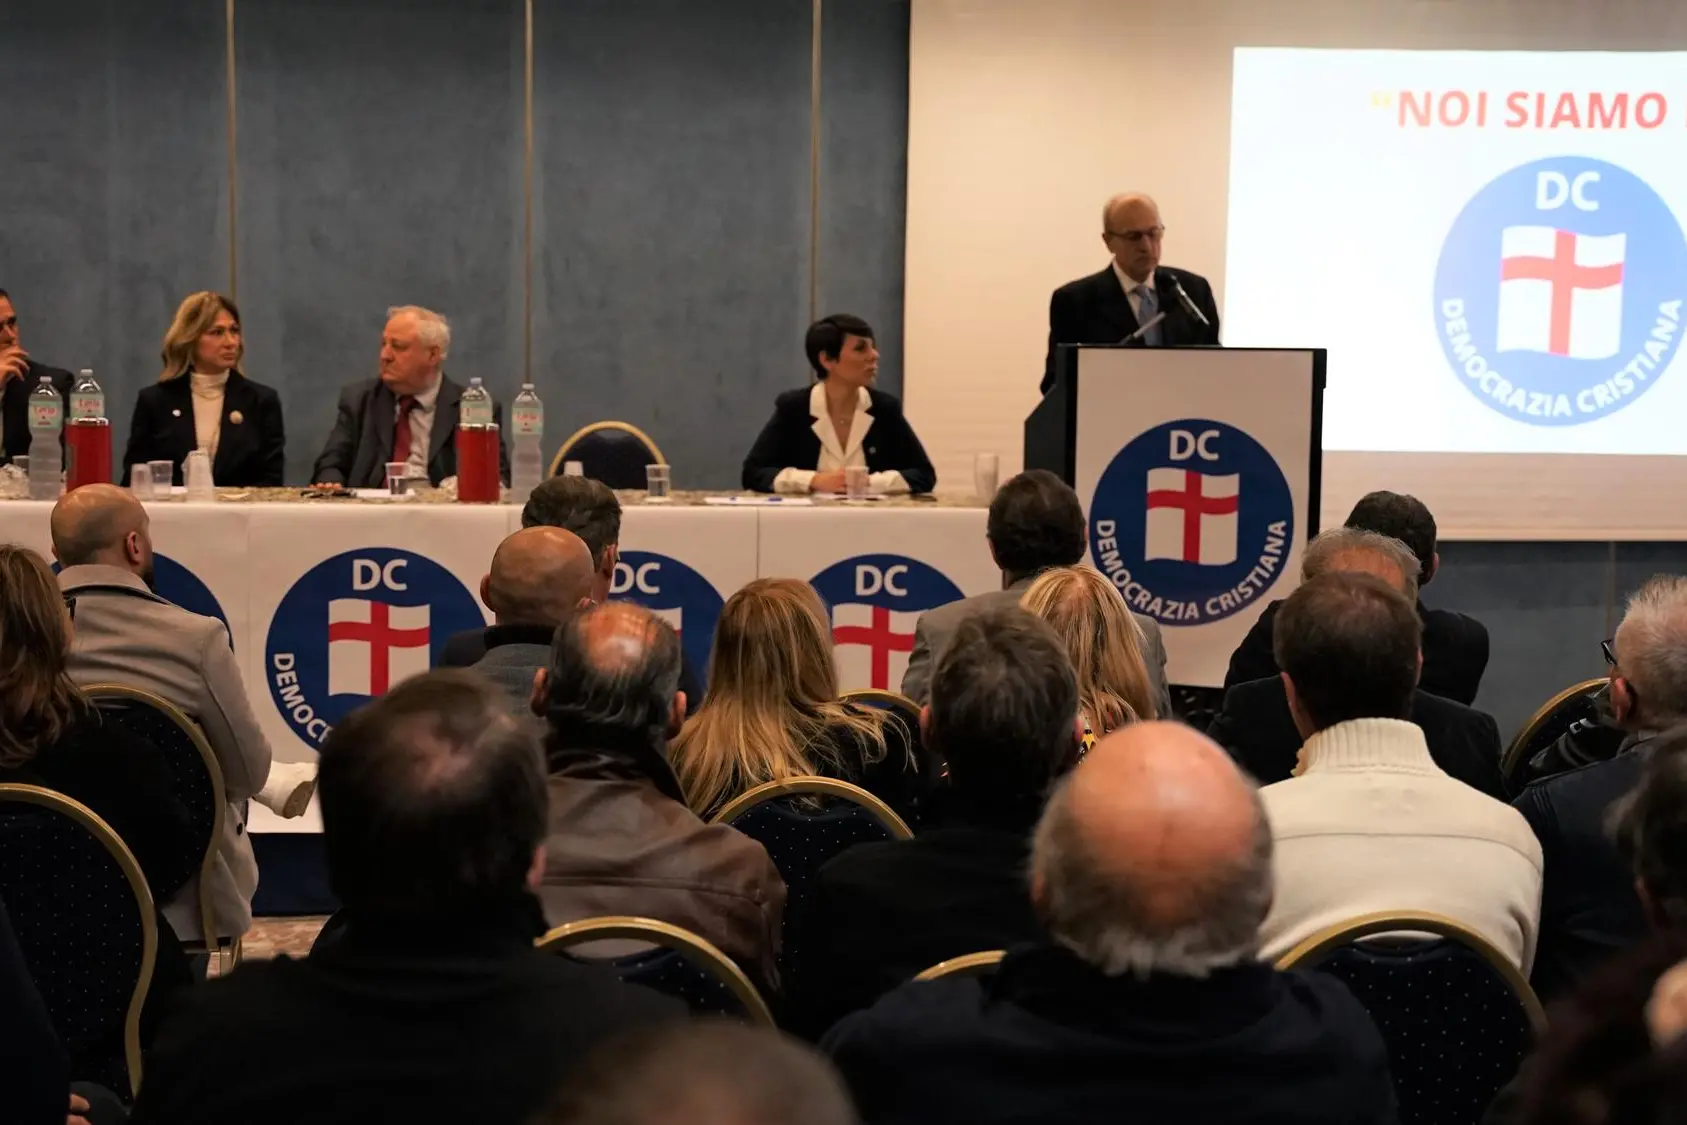 L'assemblea della Democrazia cristiana a Sassari (foto Floris)